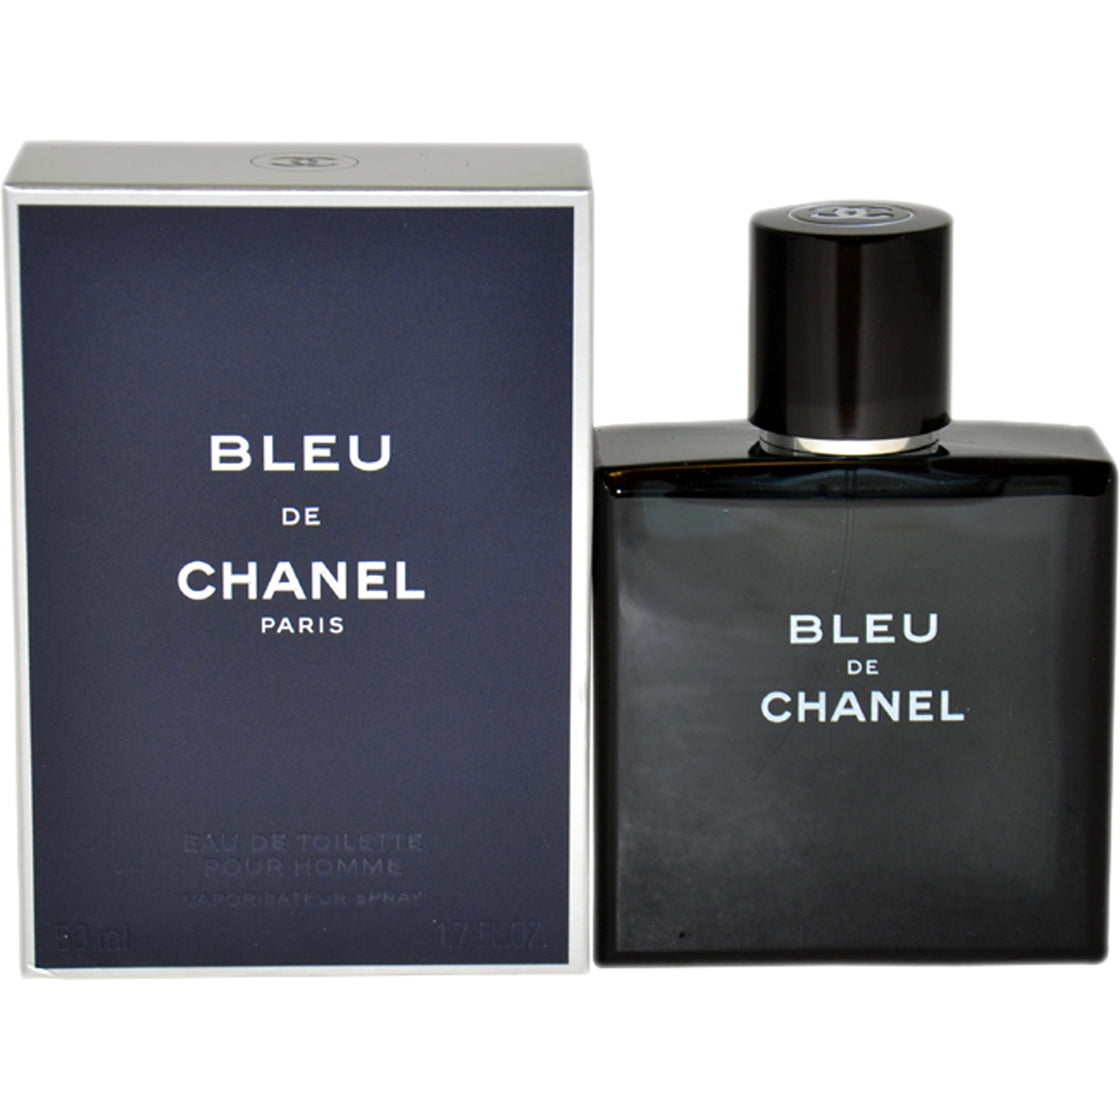 Bleu De Chanel by Chanel for Men - 1.7 oz EDT Spray